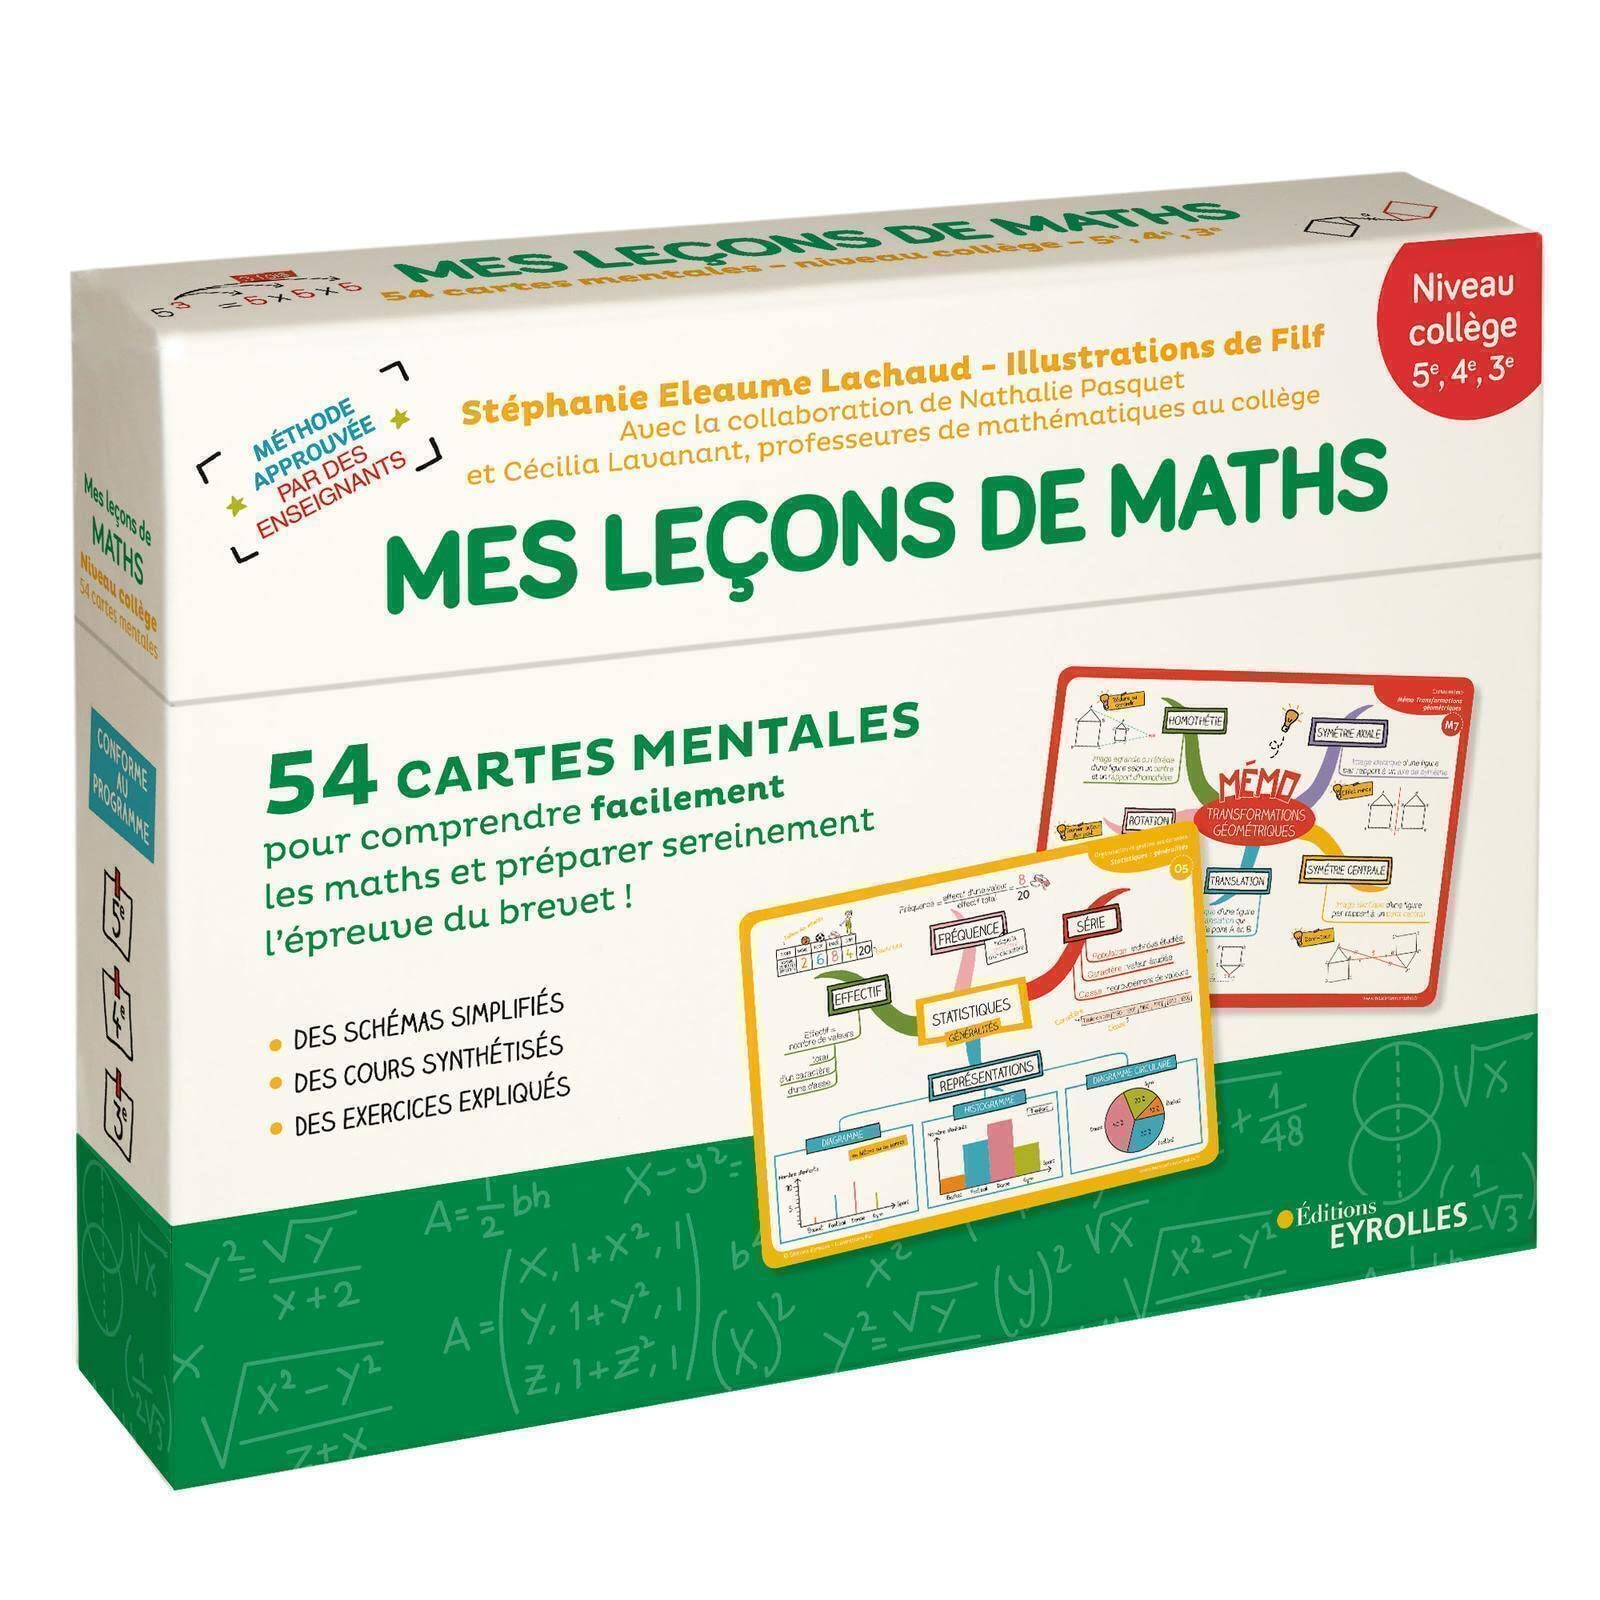 image Mes leçons de maths: 54 cartes mentales pour comprendre facilement la numération, le calcul, la g